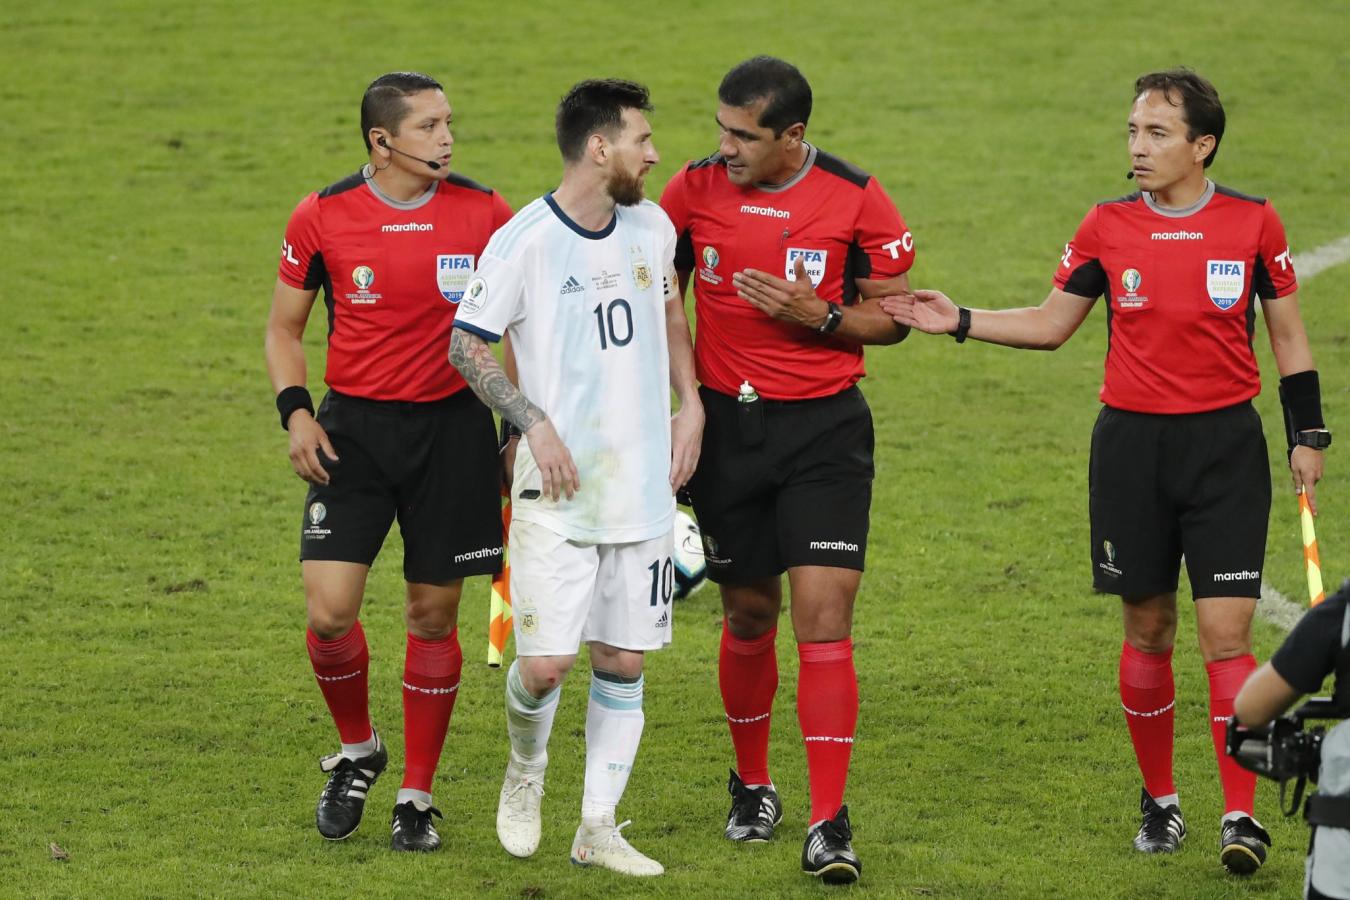 Imagen Messi discute con Zambrano camino al vestuario. La historia habría cambiado con un llamado del VAR.